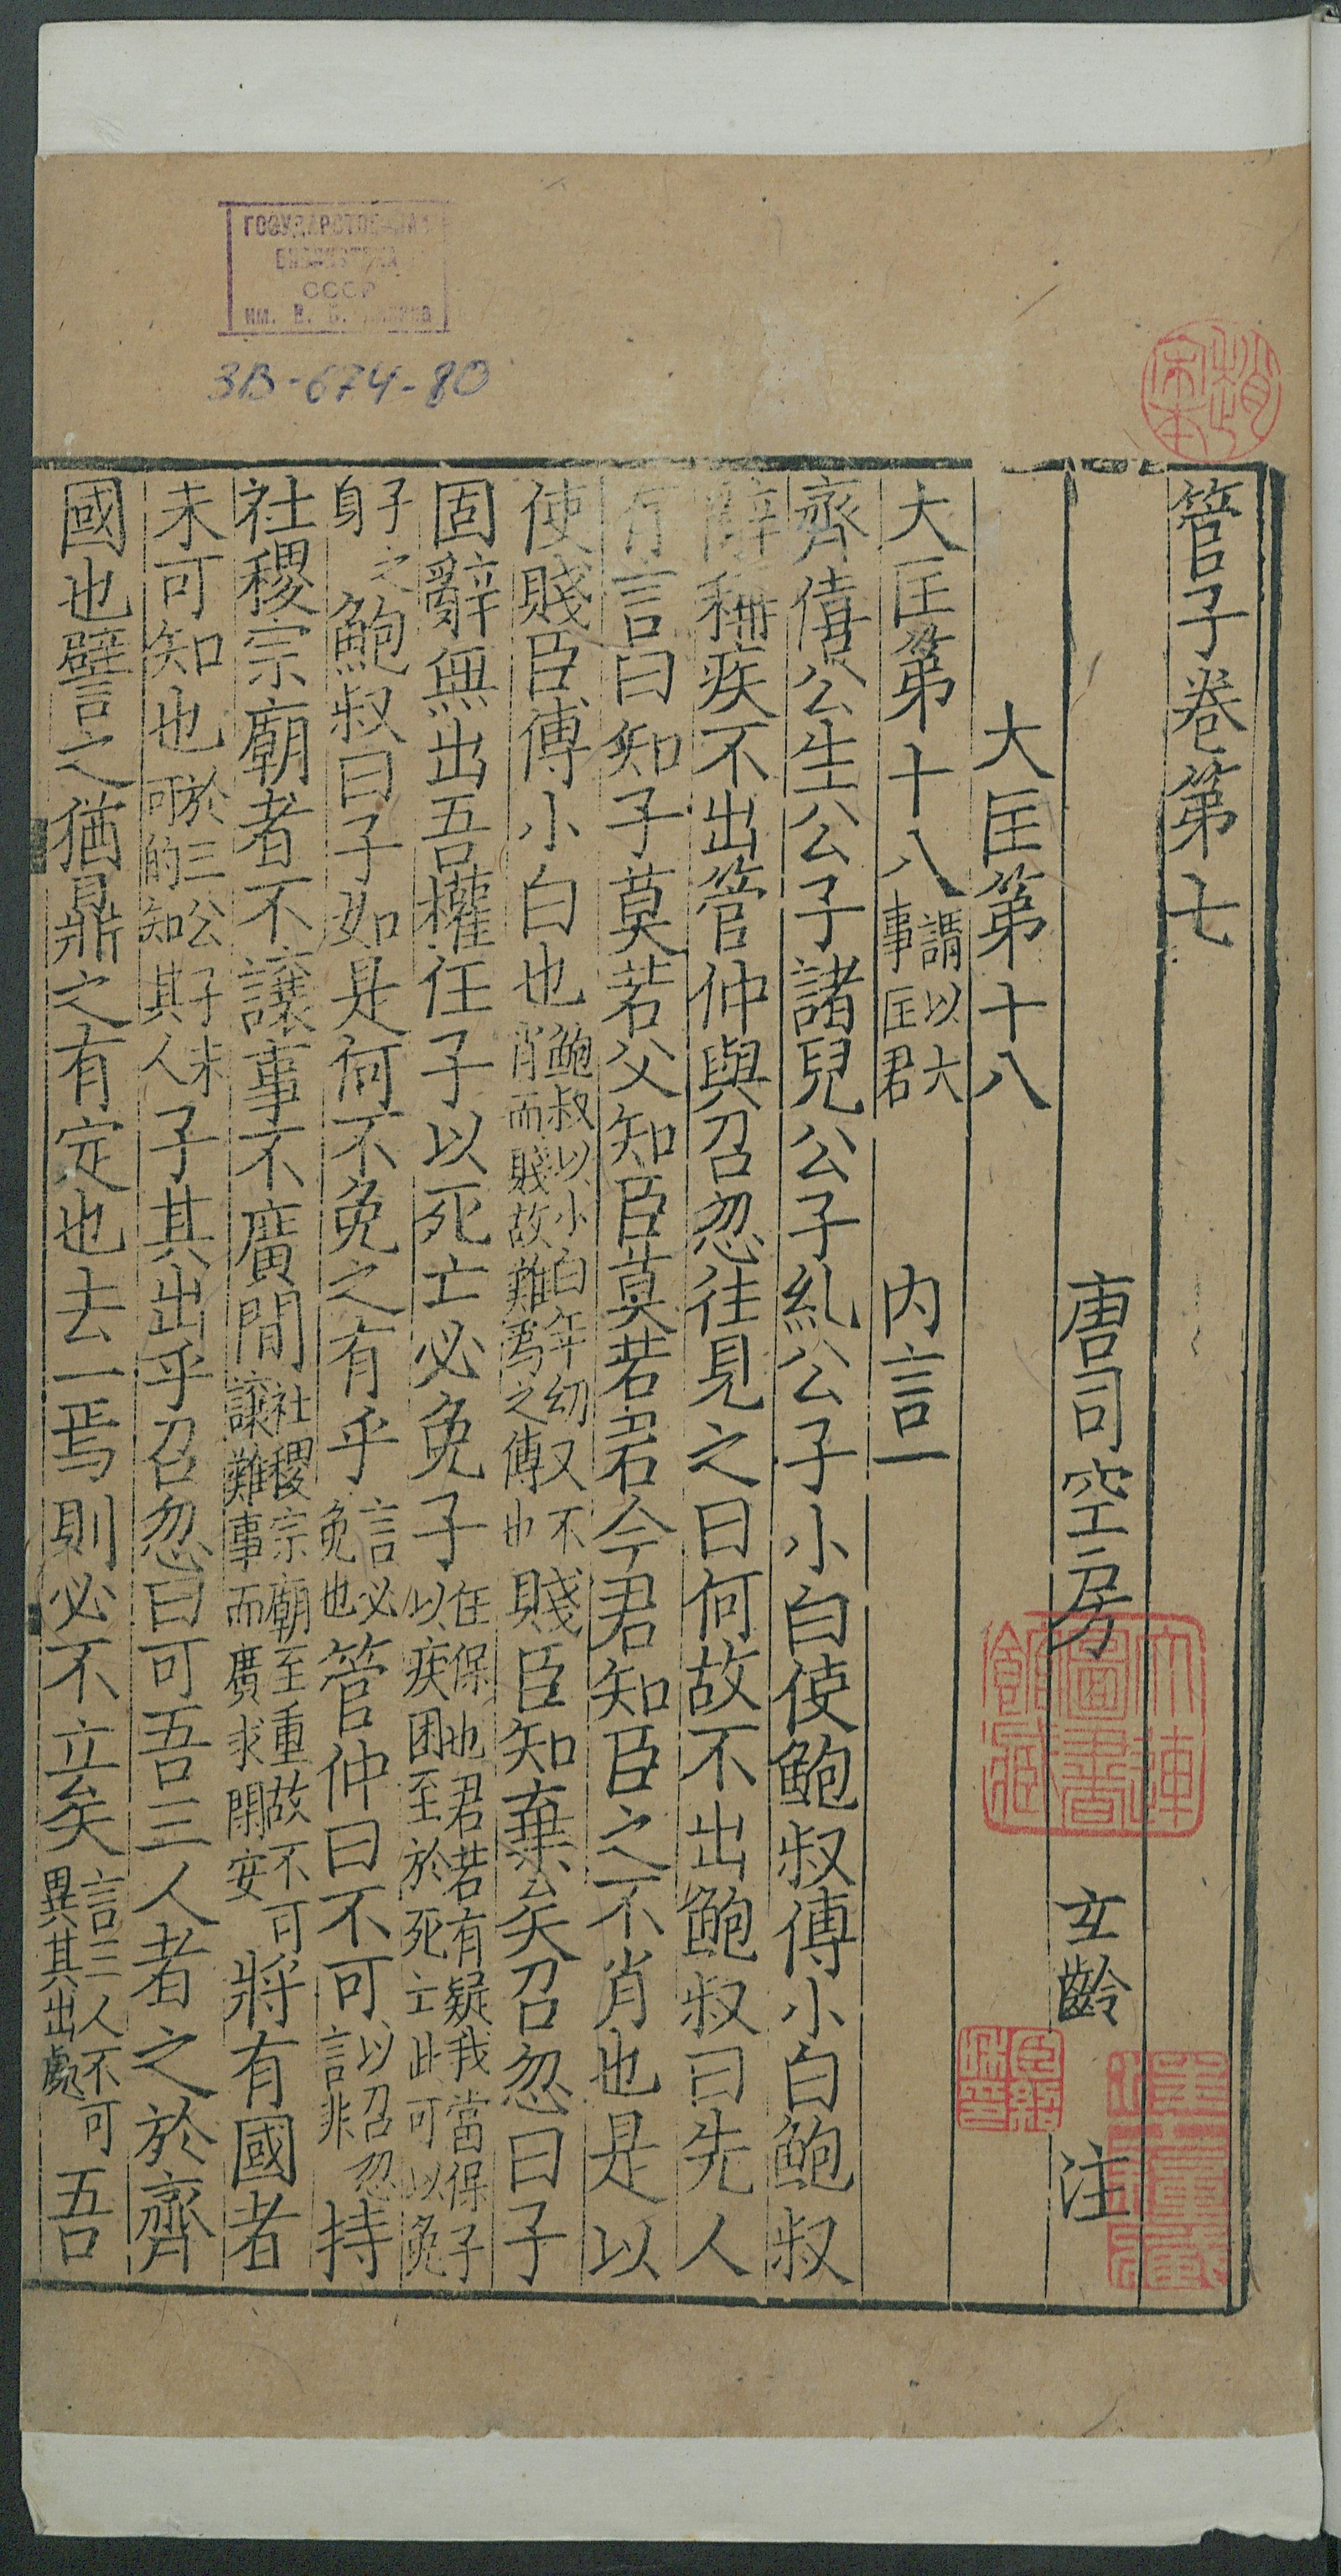 Изображение книги 管子. 注管子. Т. 3 Цзюани 7-8